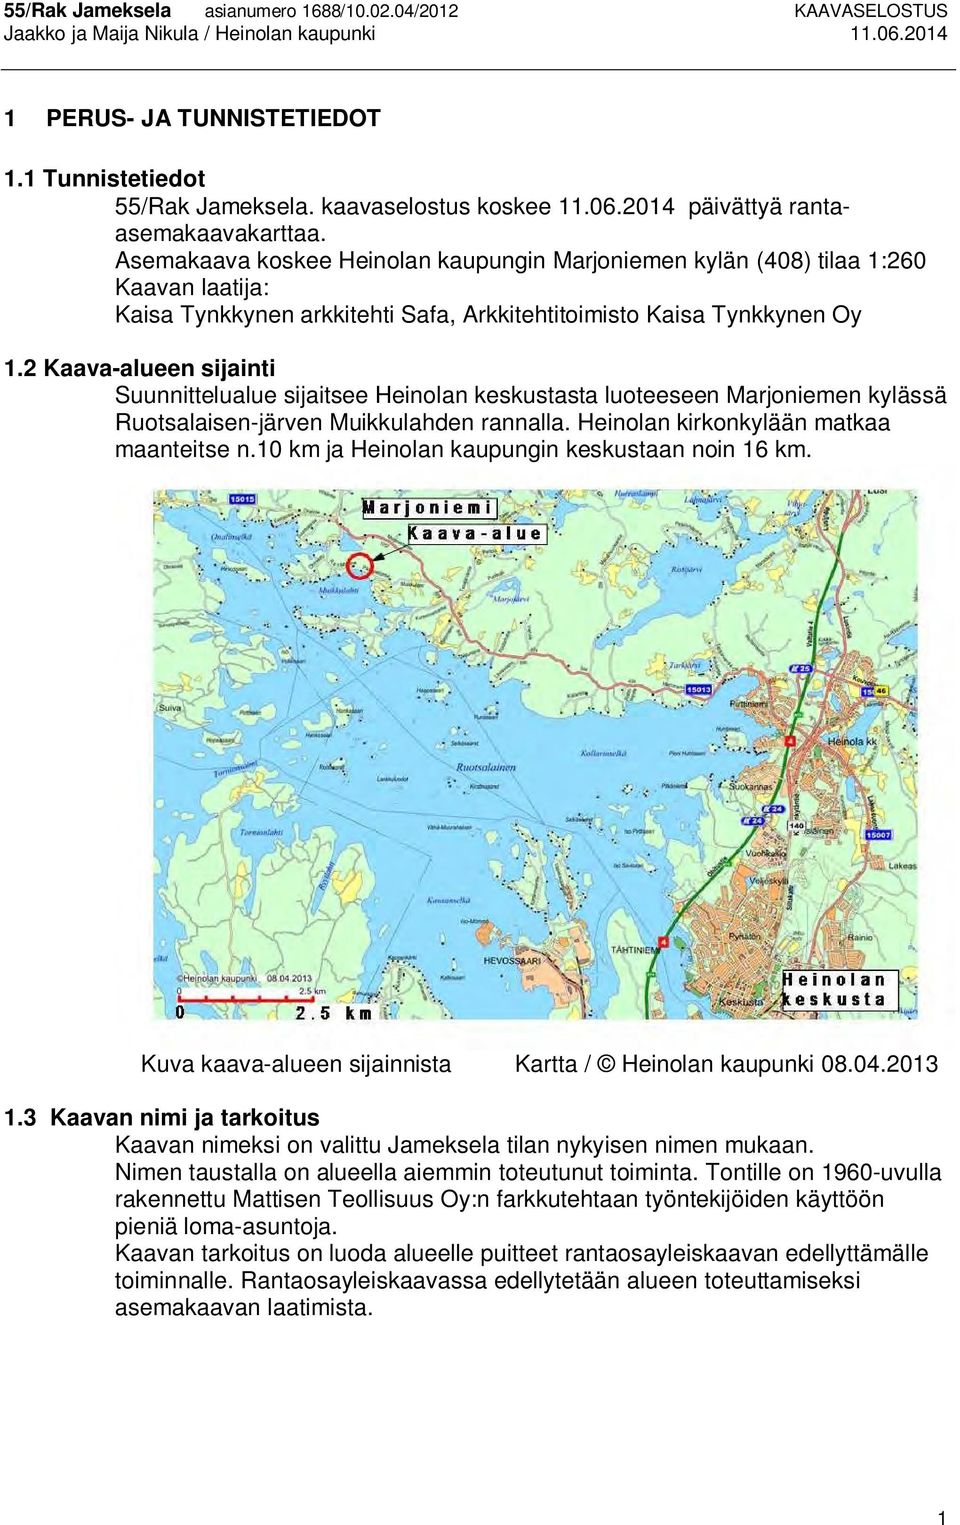 2 Kaava-alueen sijainti Suunnittelualue sijaitsee Heinolan keskustasta luoteeseen Marjoniemen kylässä Ruotsalaisen-järven Muikkulahden rannalla. Heinolan kirkonkylään matkaa maanteitse n.